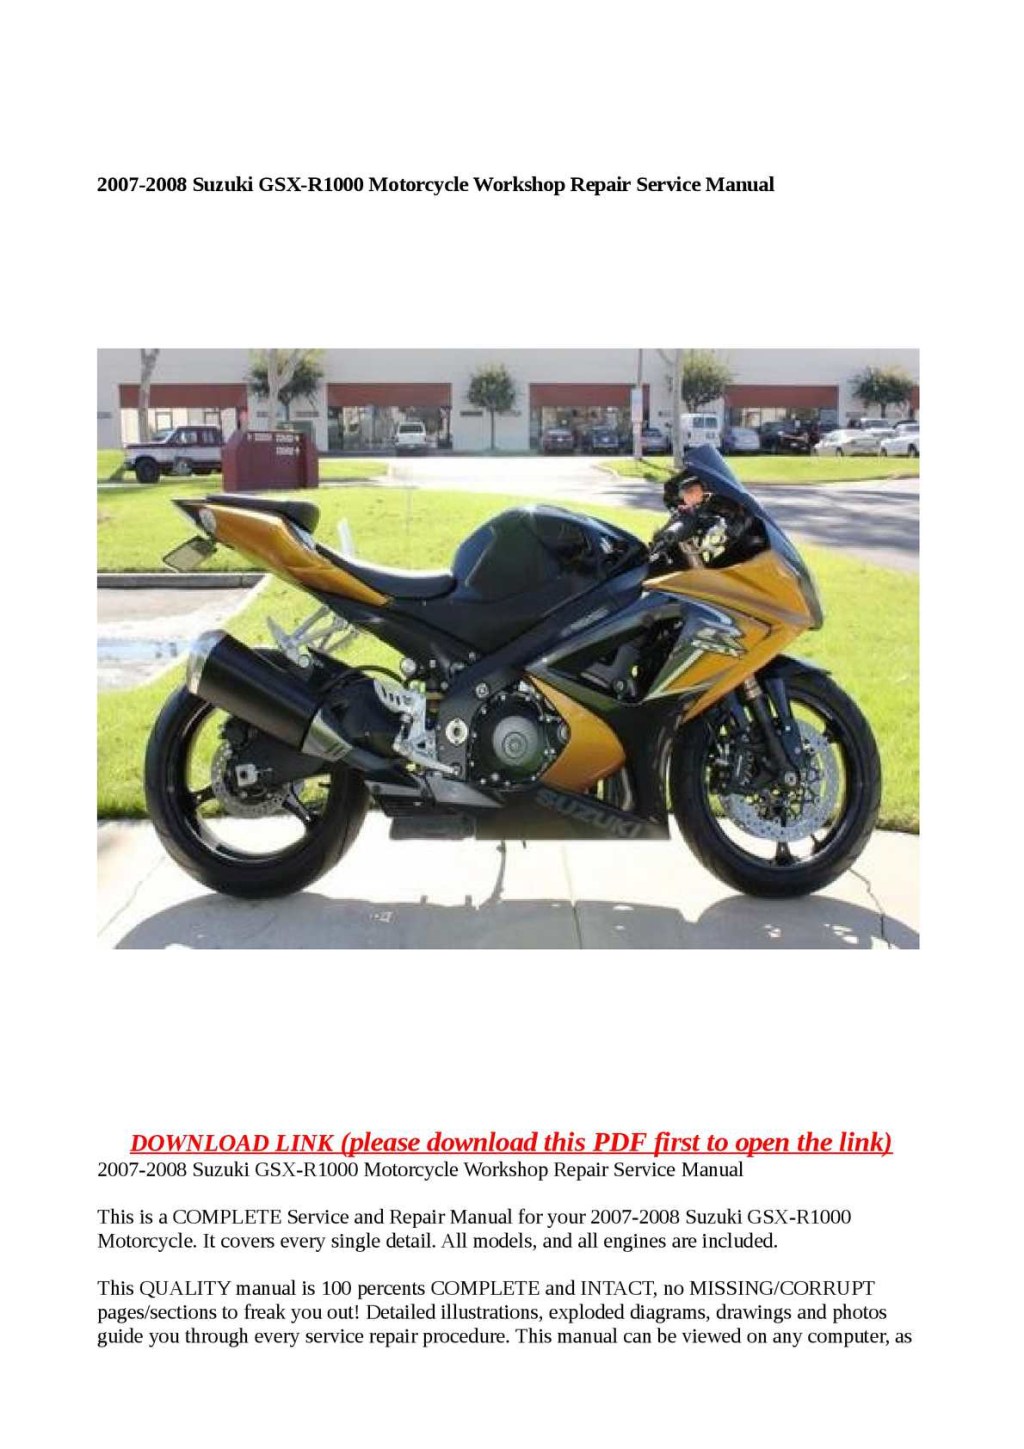 07 08 suzuki gsxr 1000 service manual free pdf download - Calaméo - - Suzuki GSX-R Motorcycle Workshop Repair